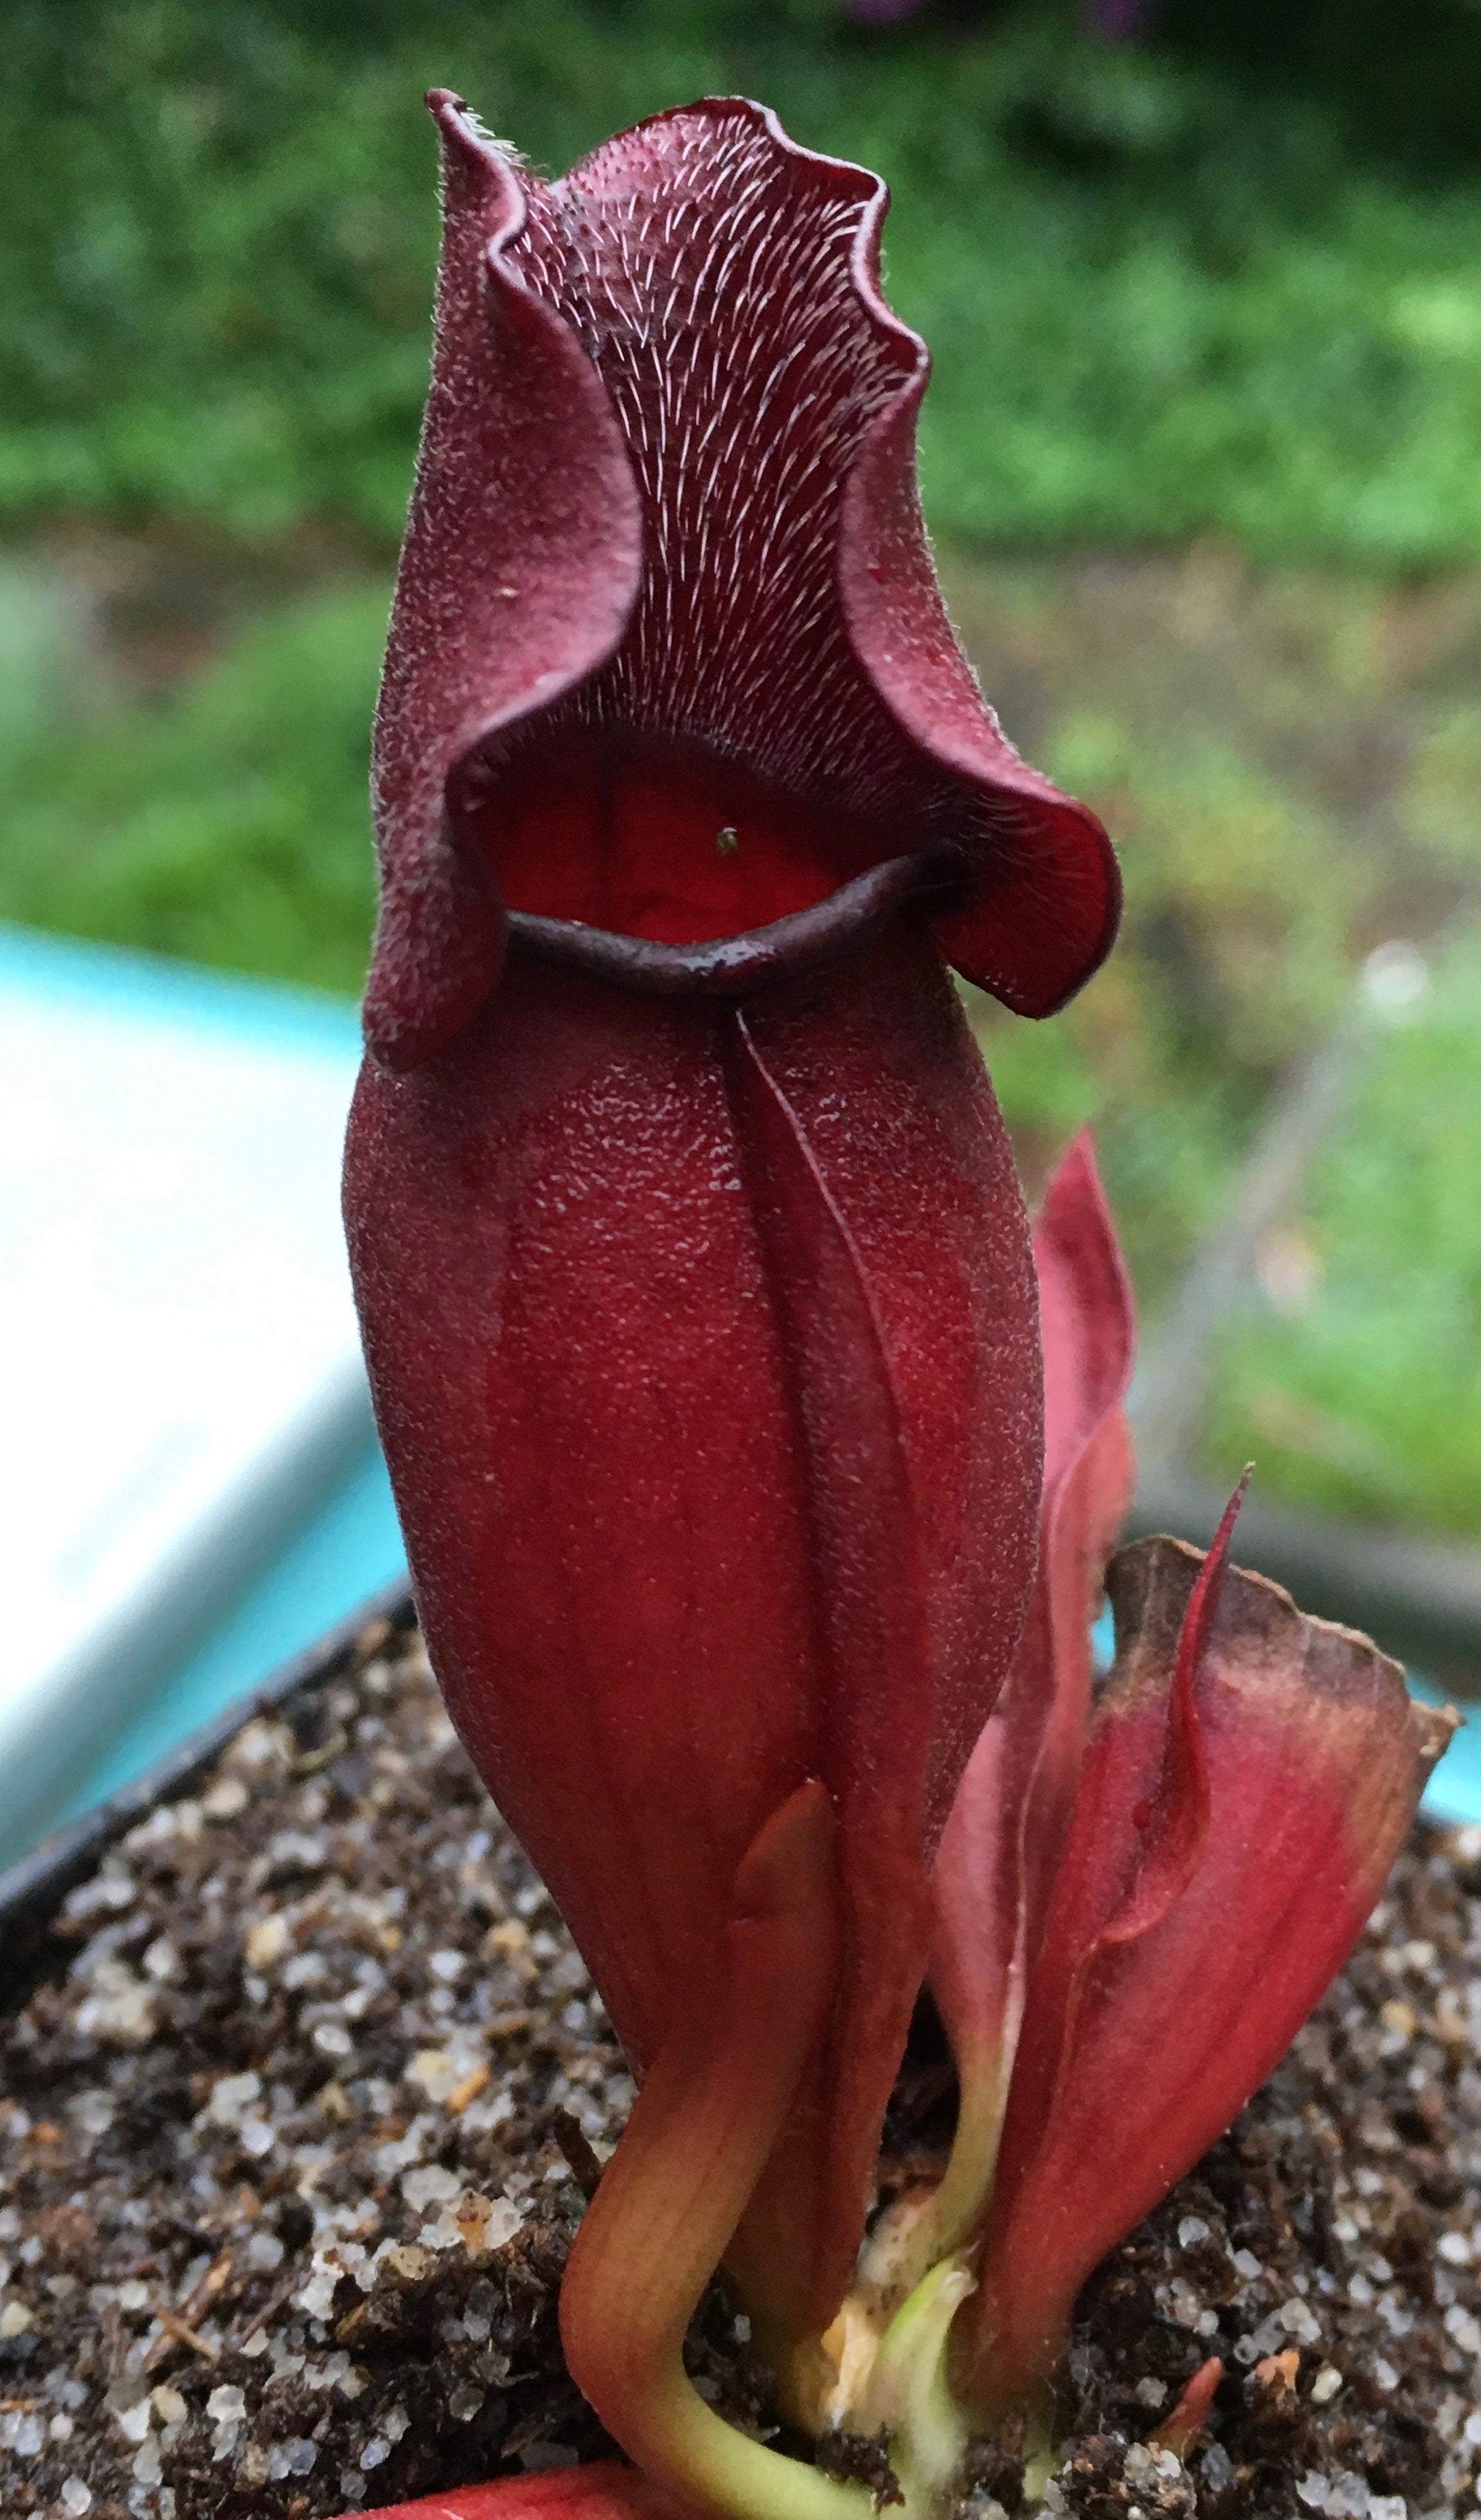 Sarracenia purpurea venosa "All Red"